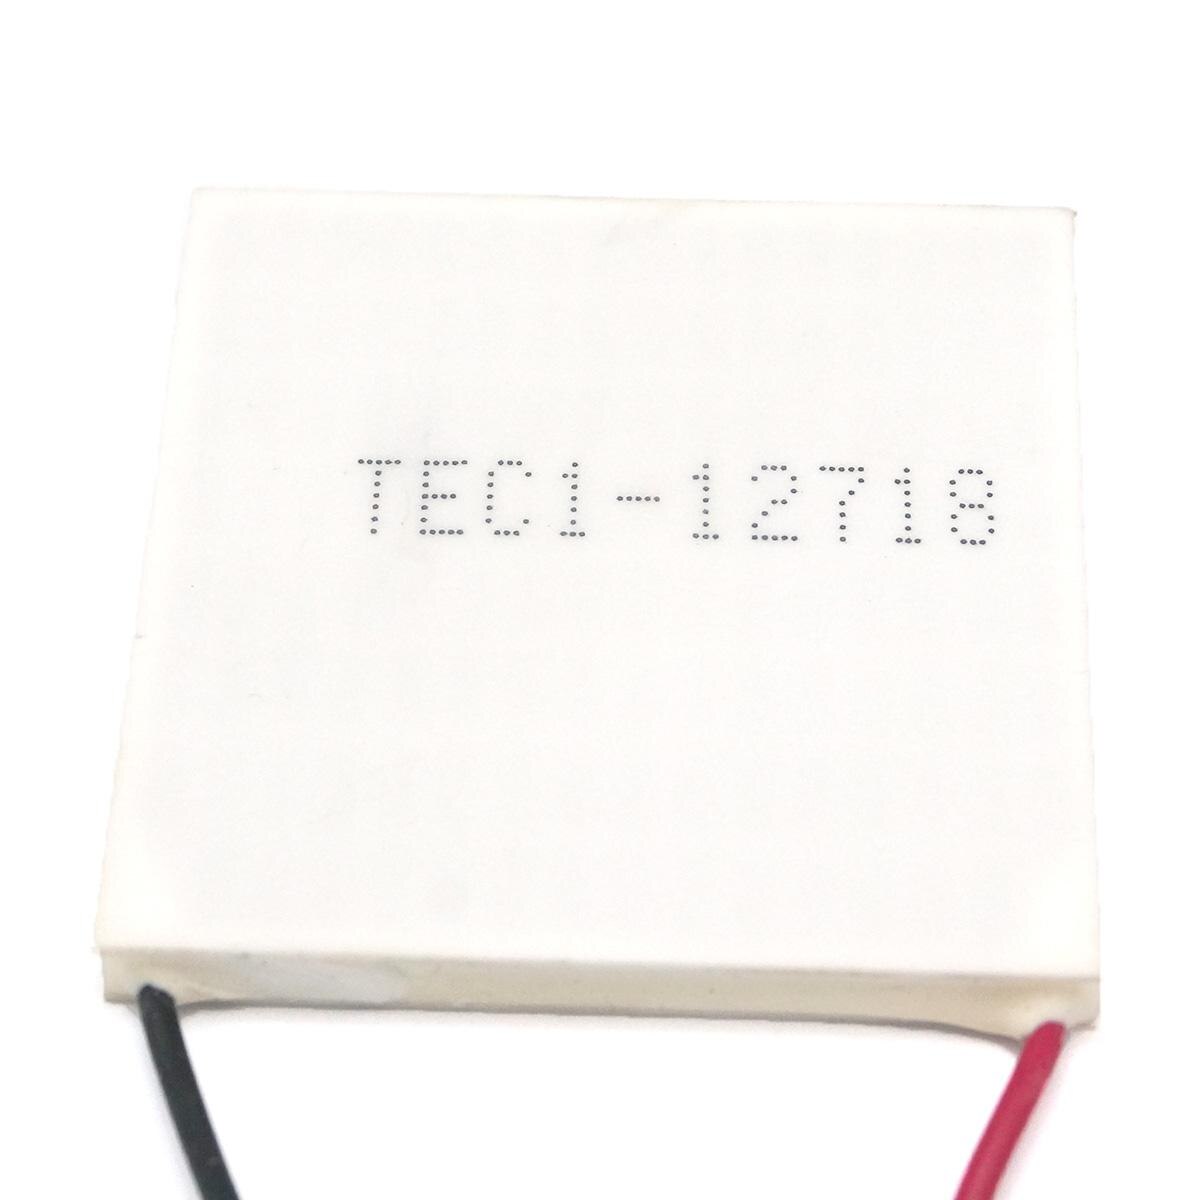 Tec 1-12718 50 x 50mm 12v 18a kølelegeme termoelektrisk køler peltier køleplade kølemodul